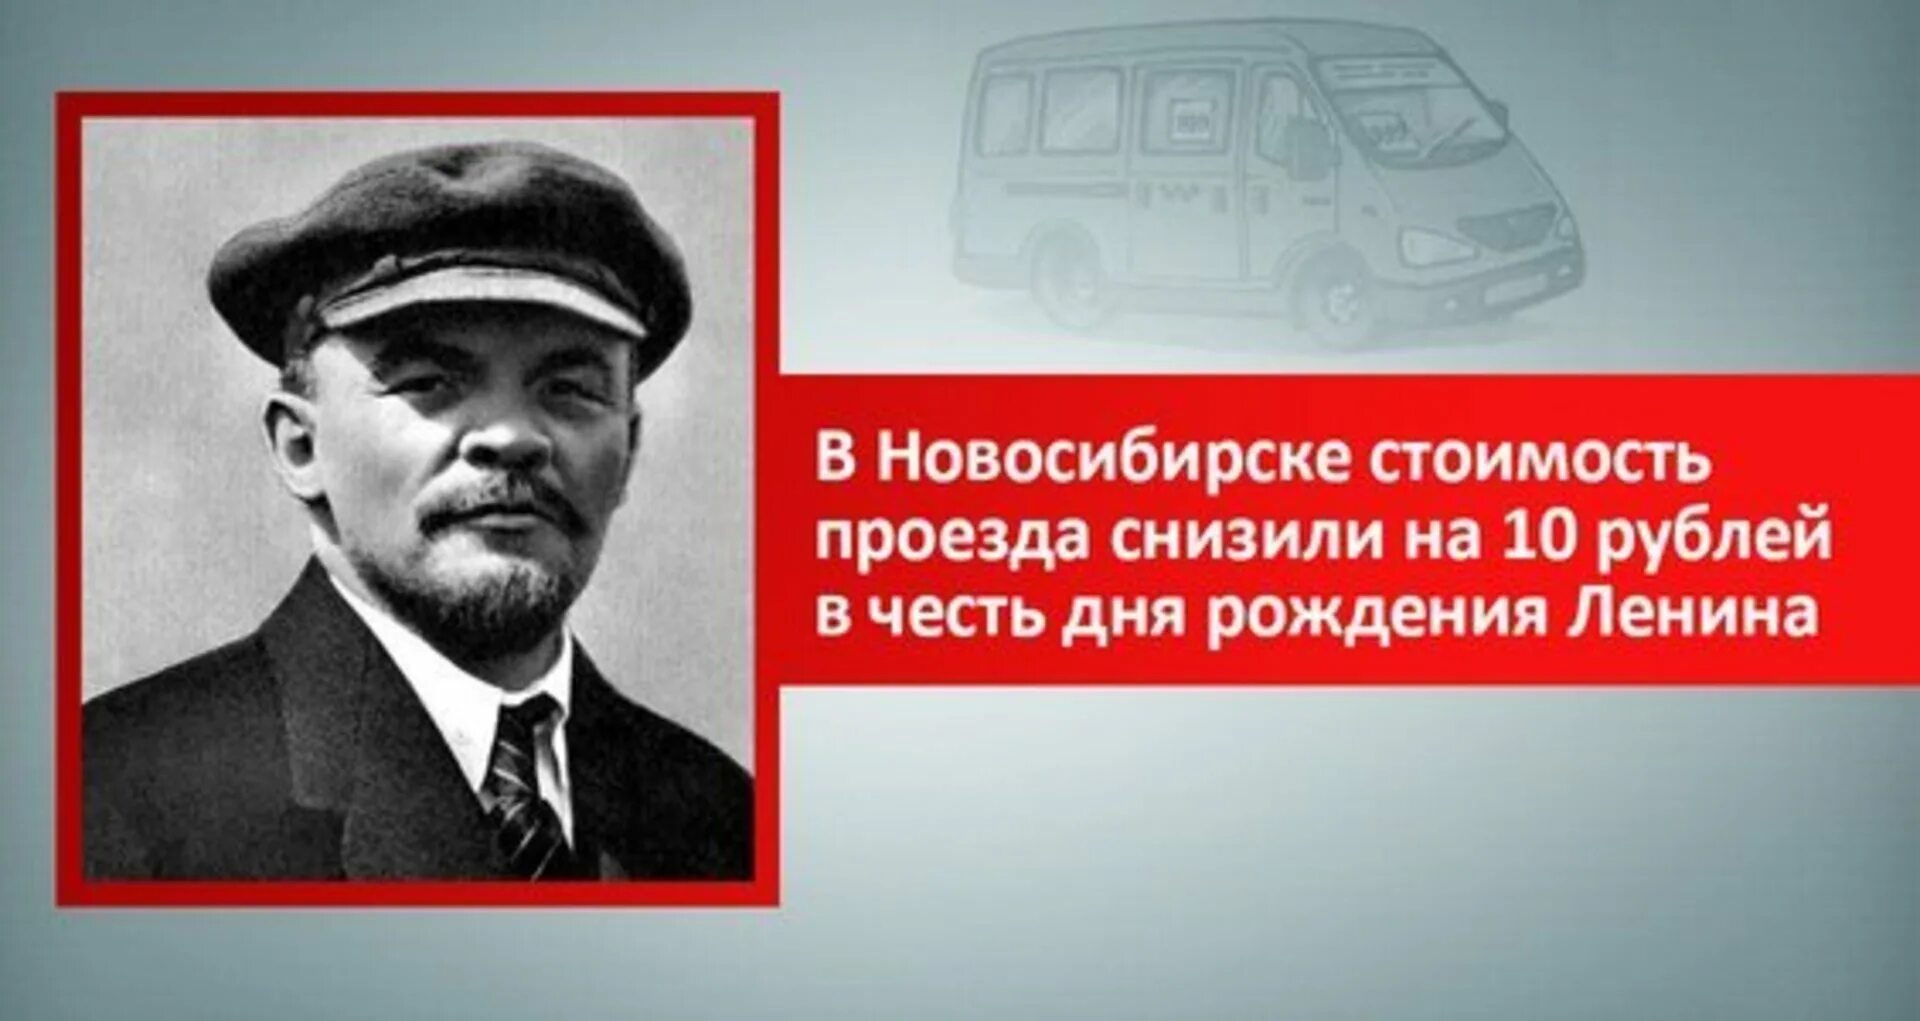 День рождения ленина и гитлера 21 апреля. 22 Апреля день рождения Ленина. 22 Апреля день рождения Ленина и Гитлера. День рождения Ильича.